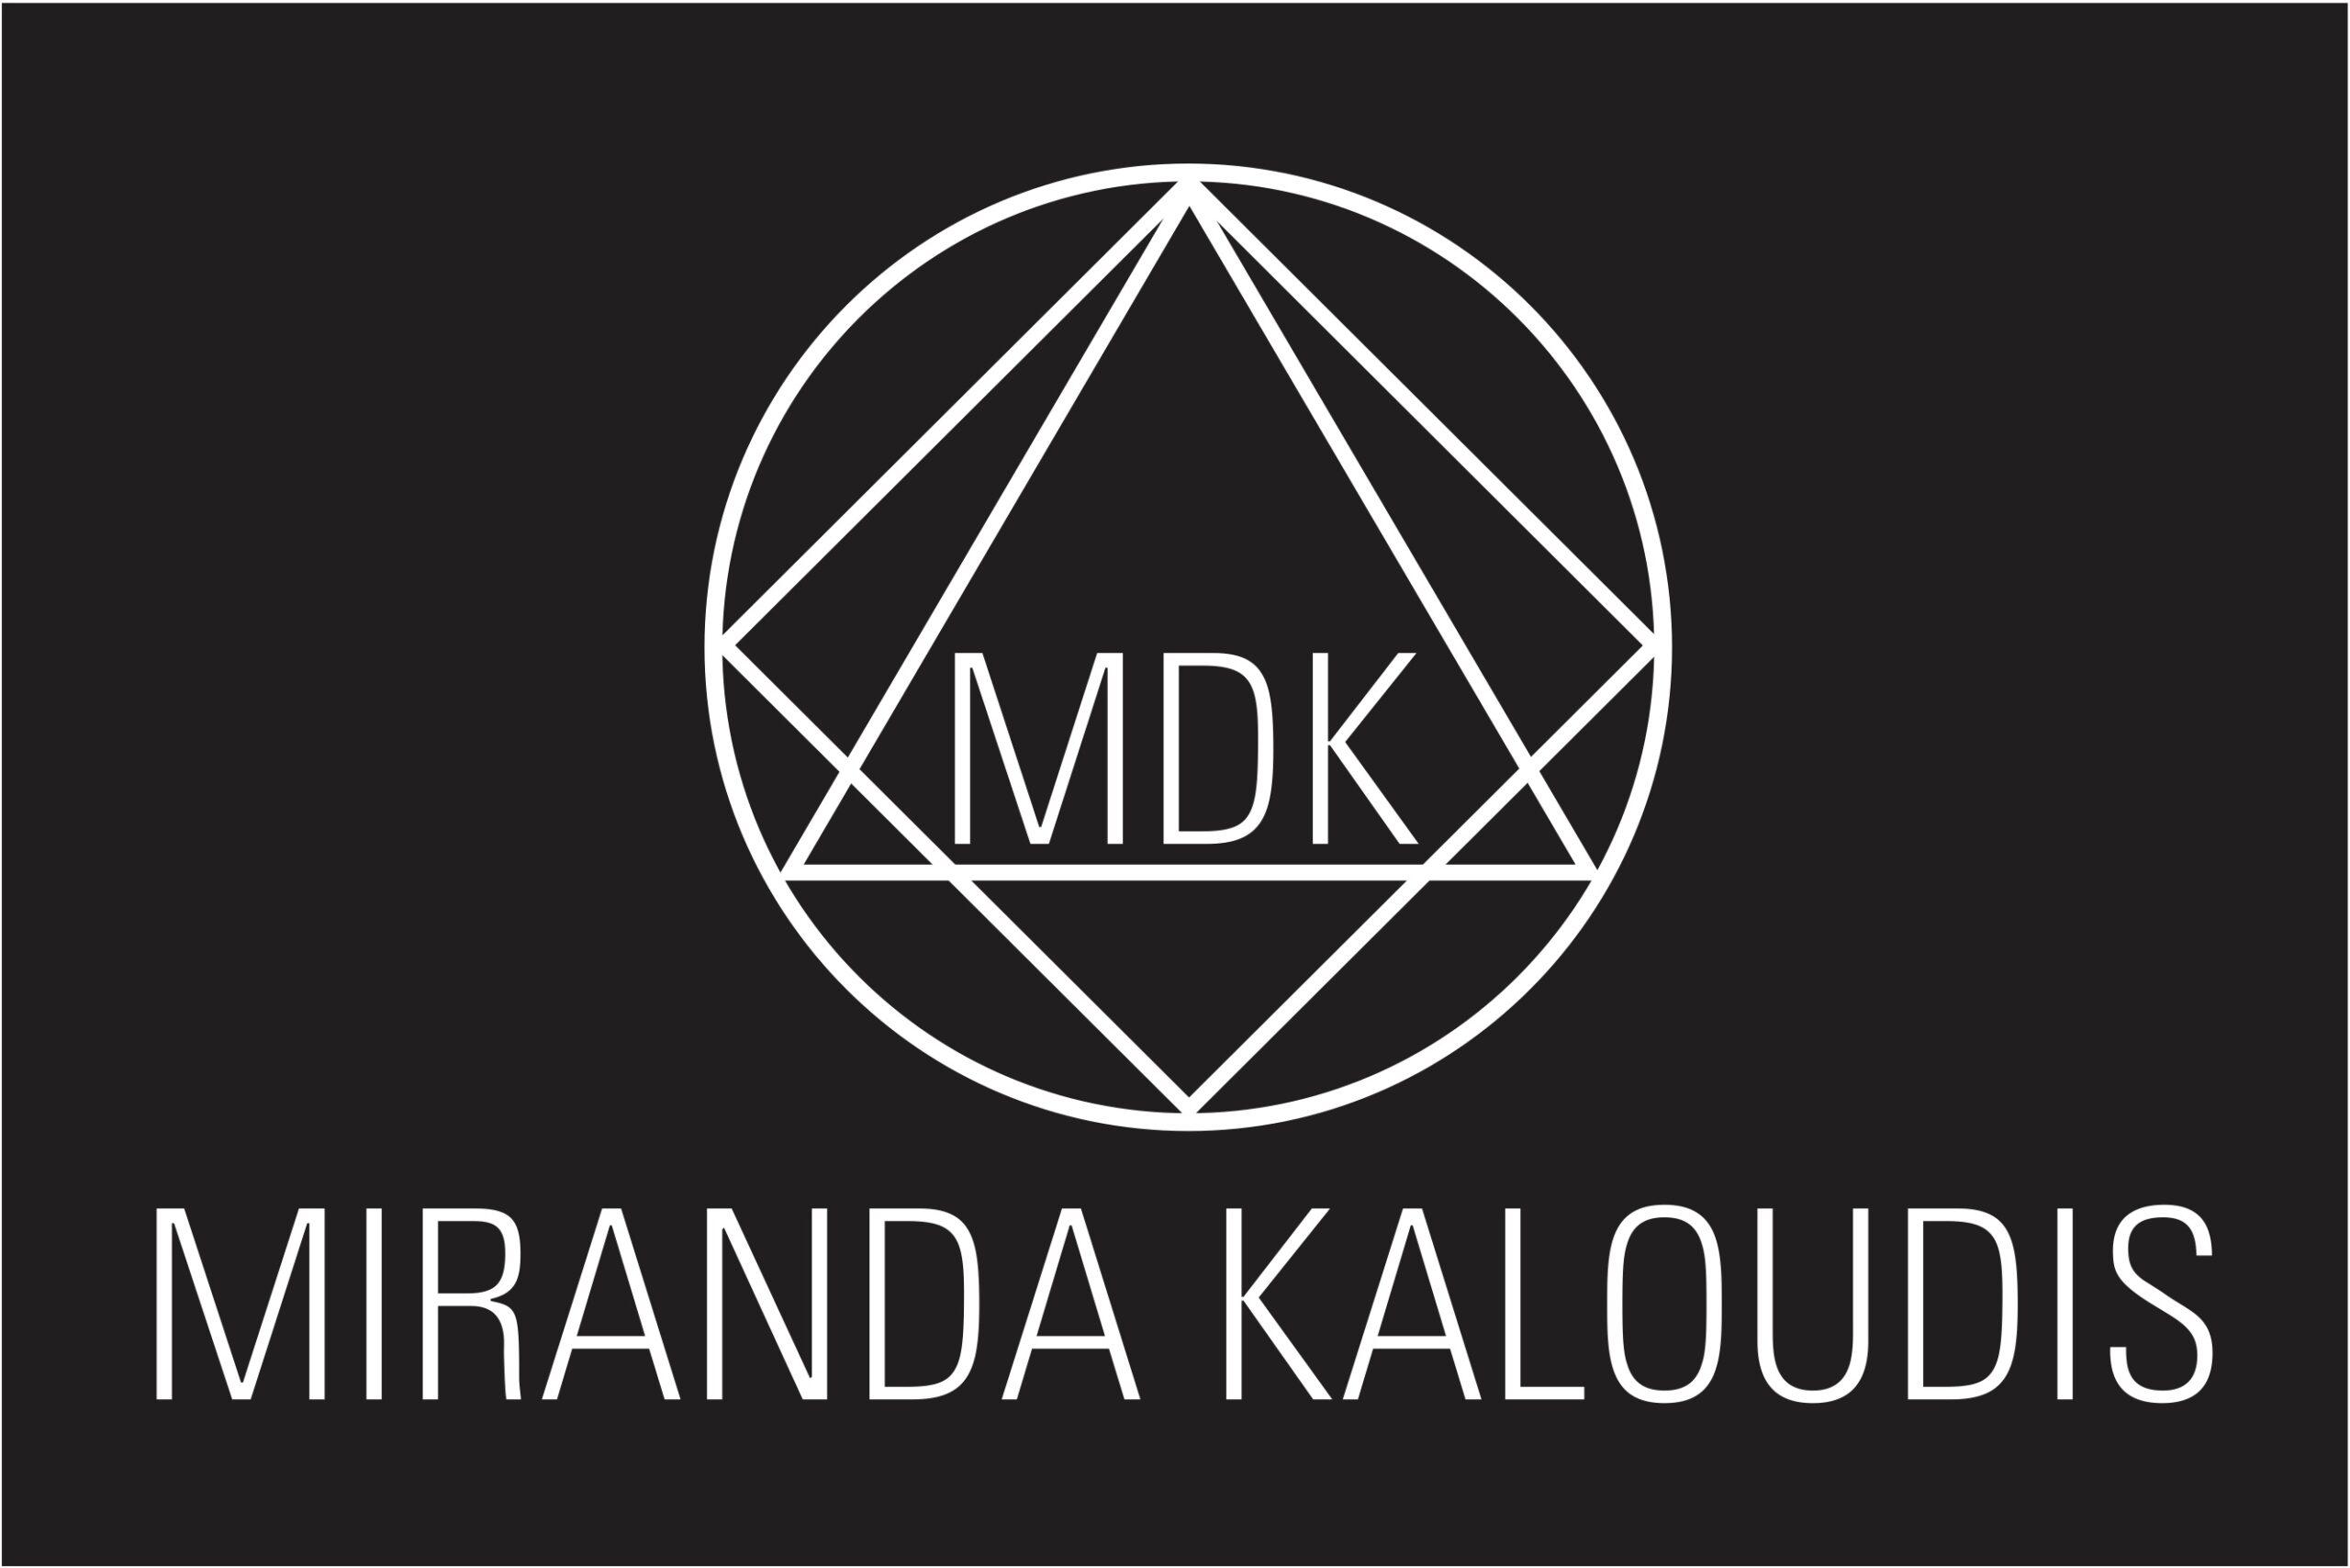 MDK – Miranda Kaloudis